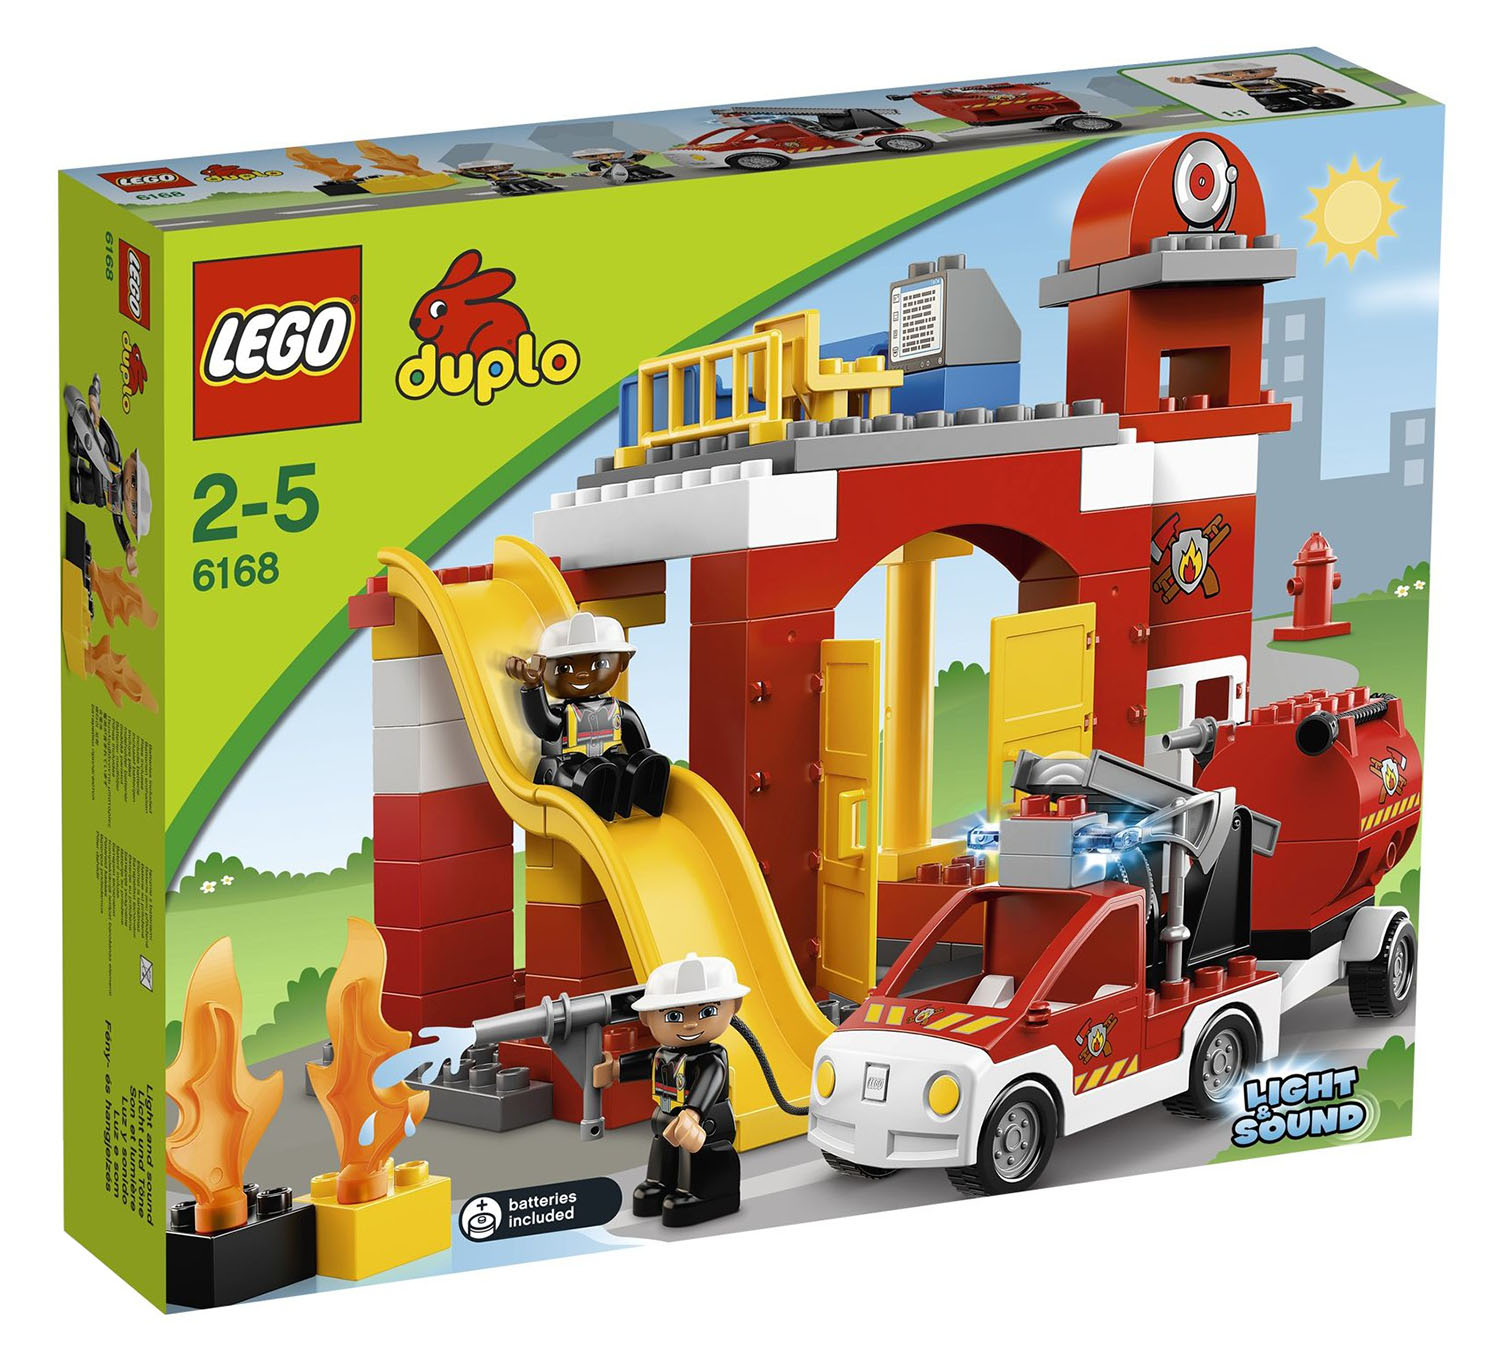 LEGO Duplo 6168 pas cher, La caserne des pompiers